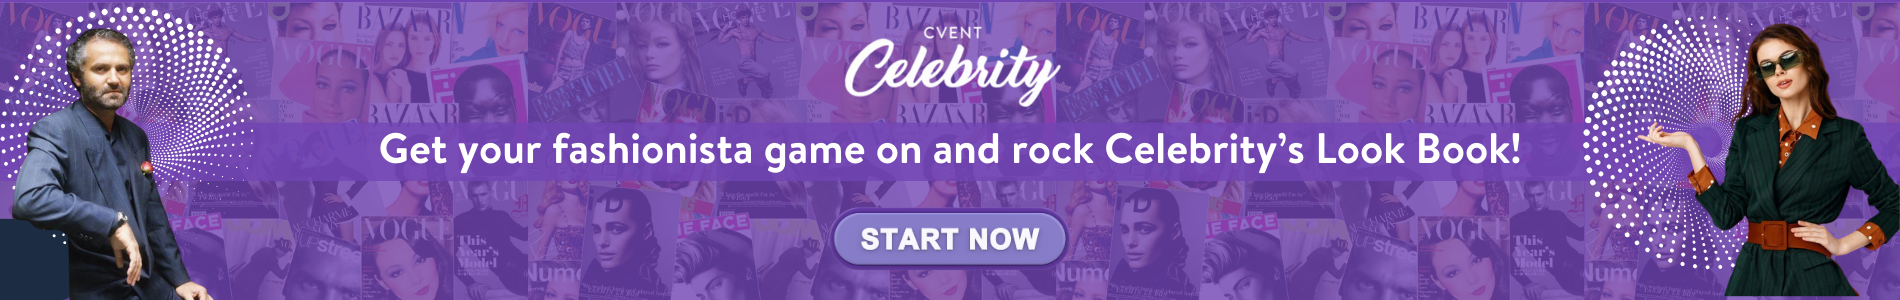 CVENT Celebrity Banner